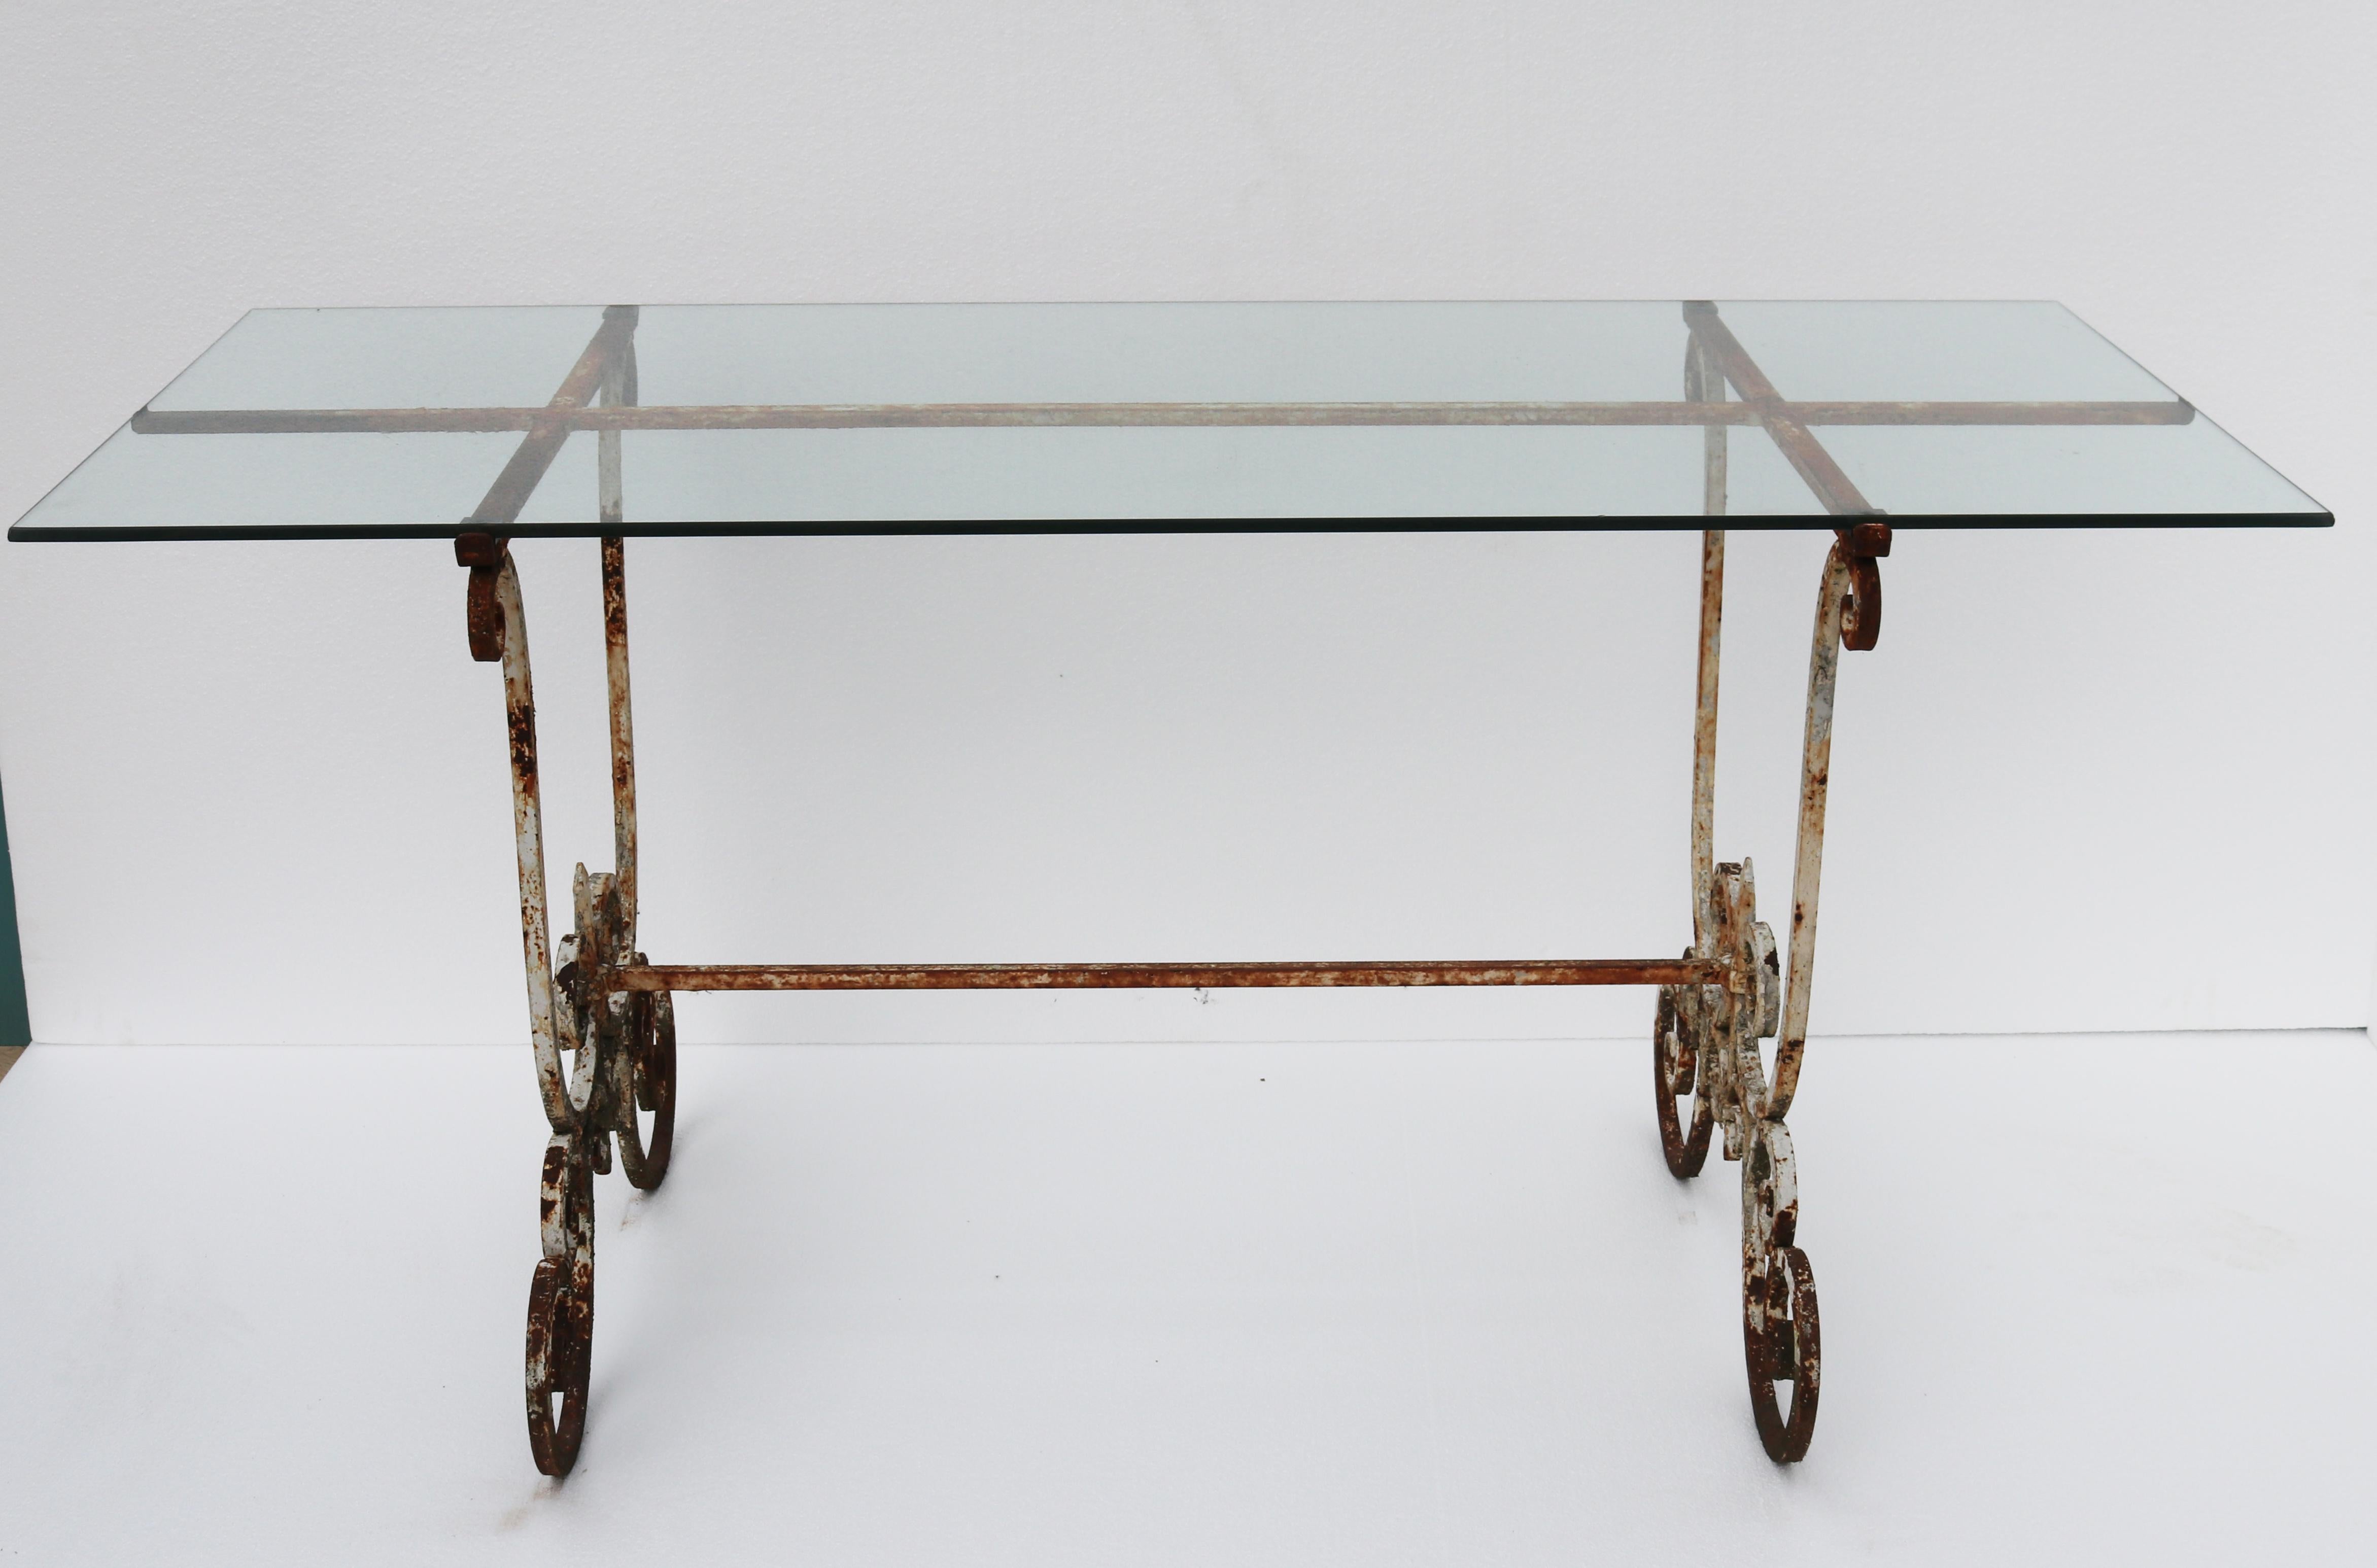 Eine Tischplatte aus Glas, die auf einem Eisengestell mit geschwungenem Muster ruht.